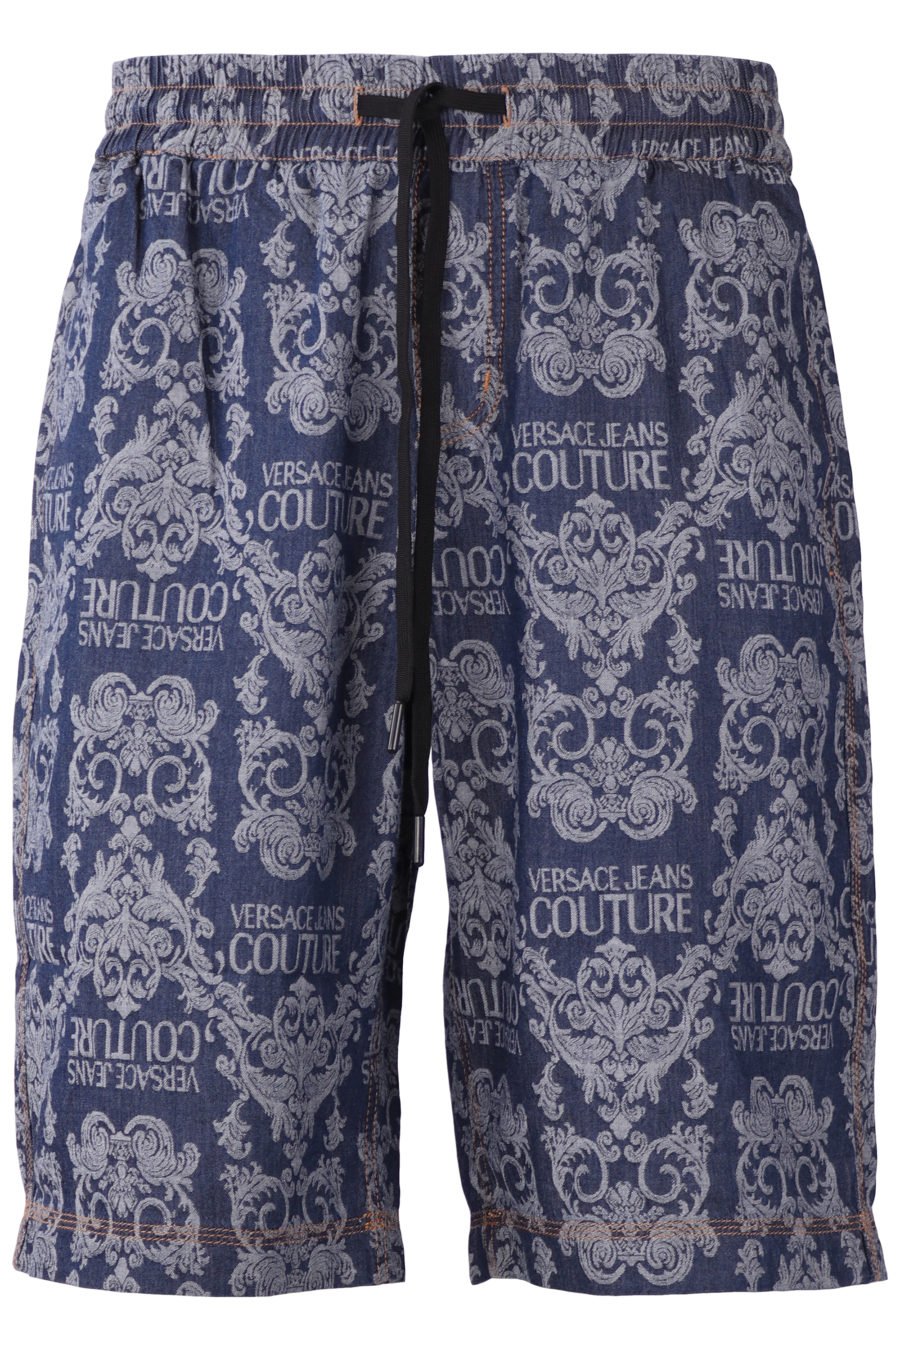 Pantalón corto Versace Jeans Couture con estampado barroco - IMG 0849